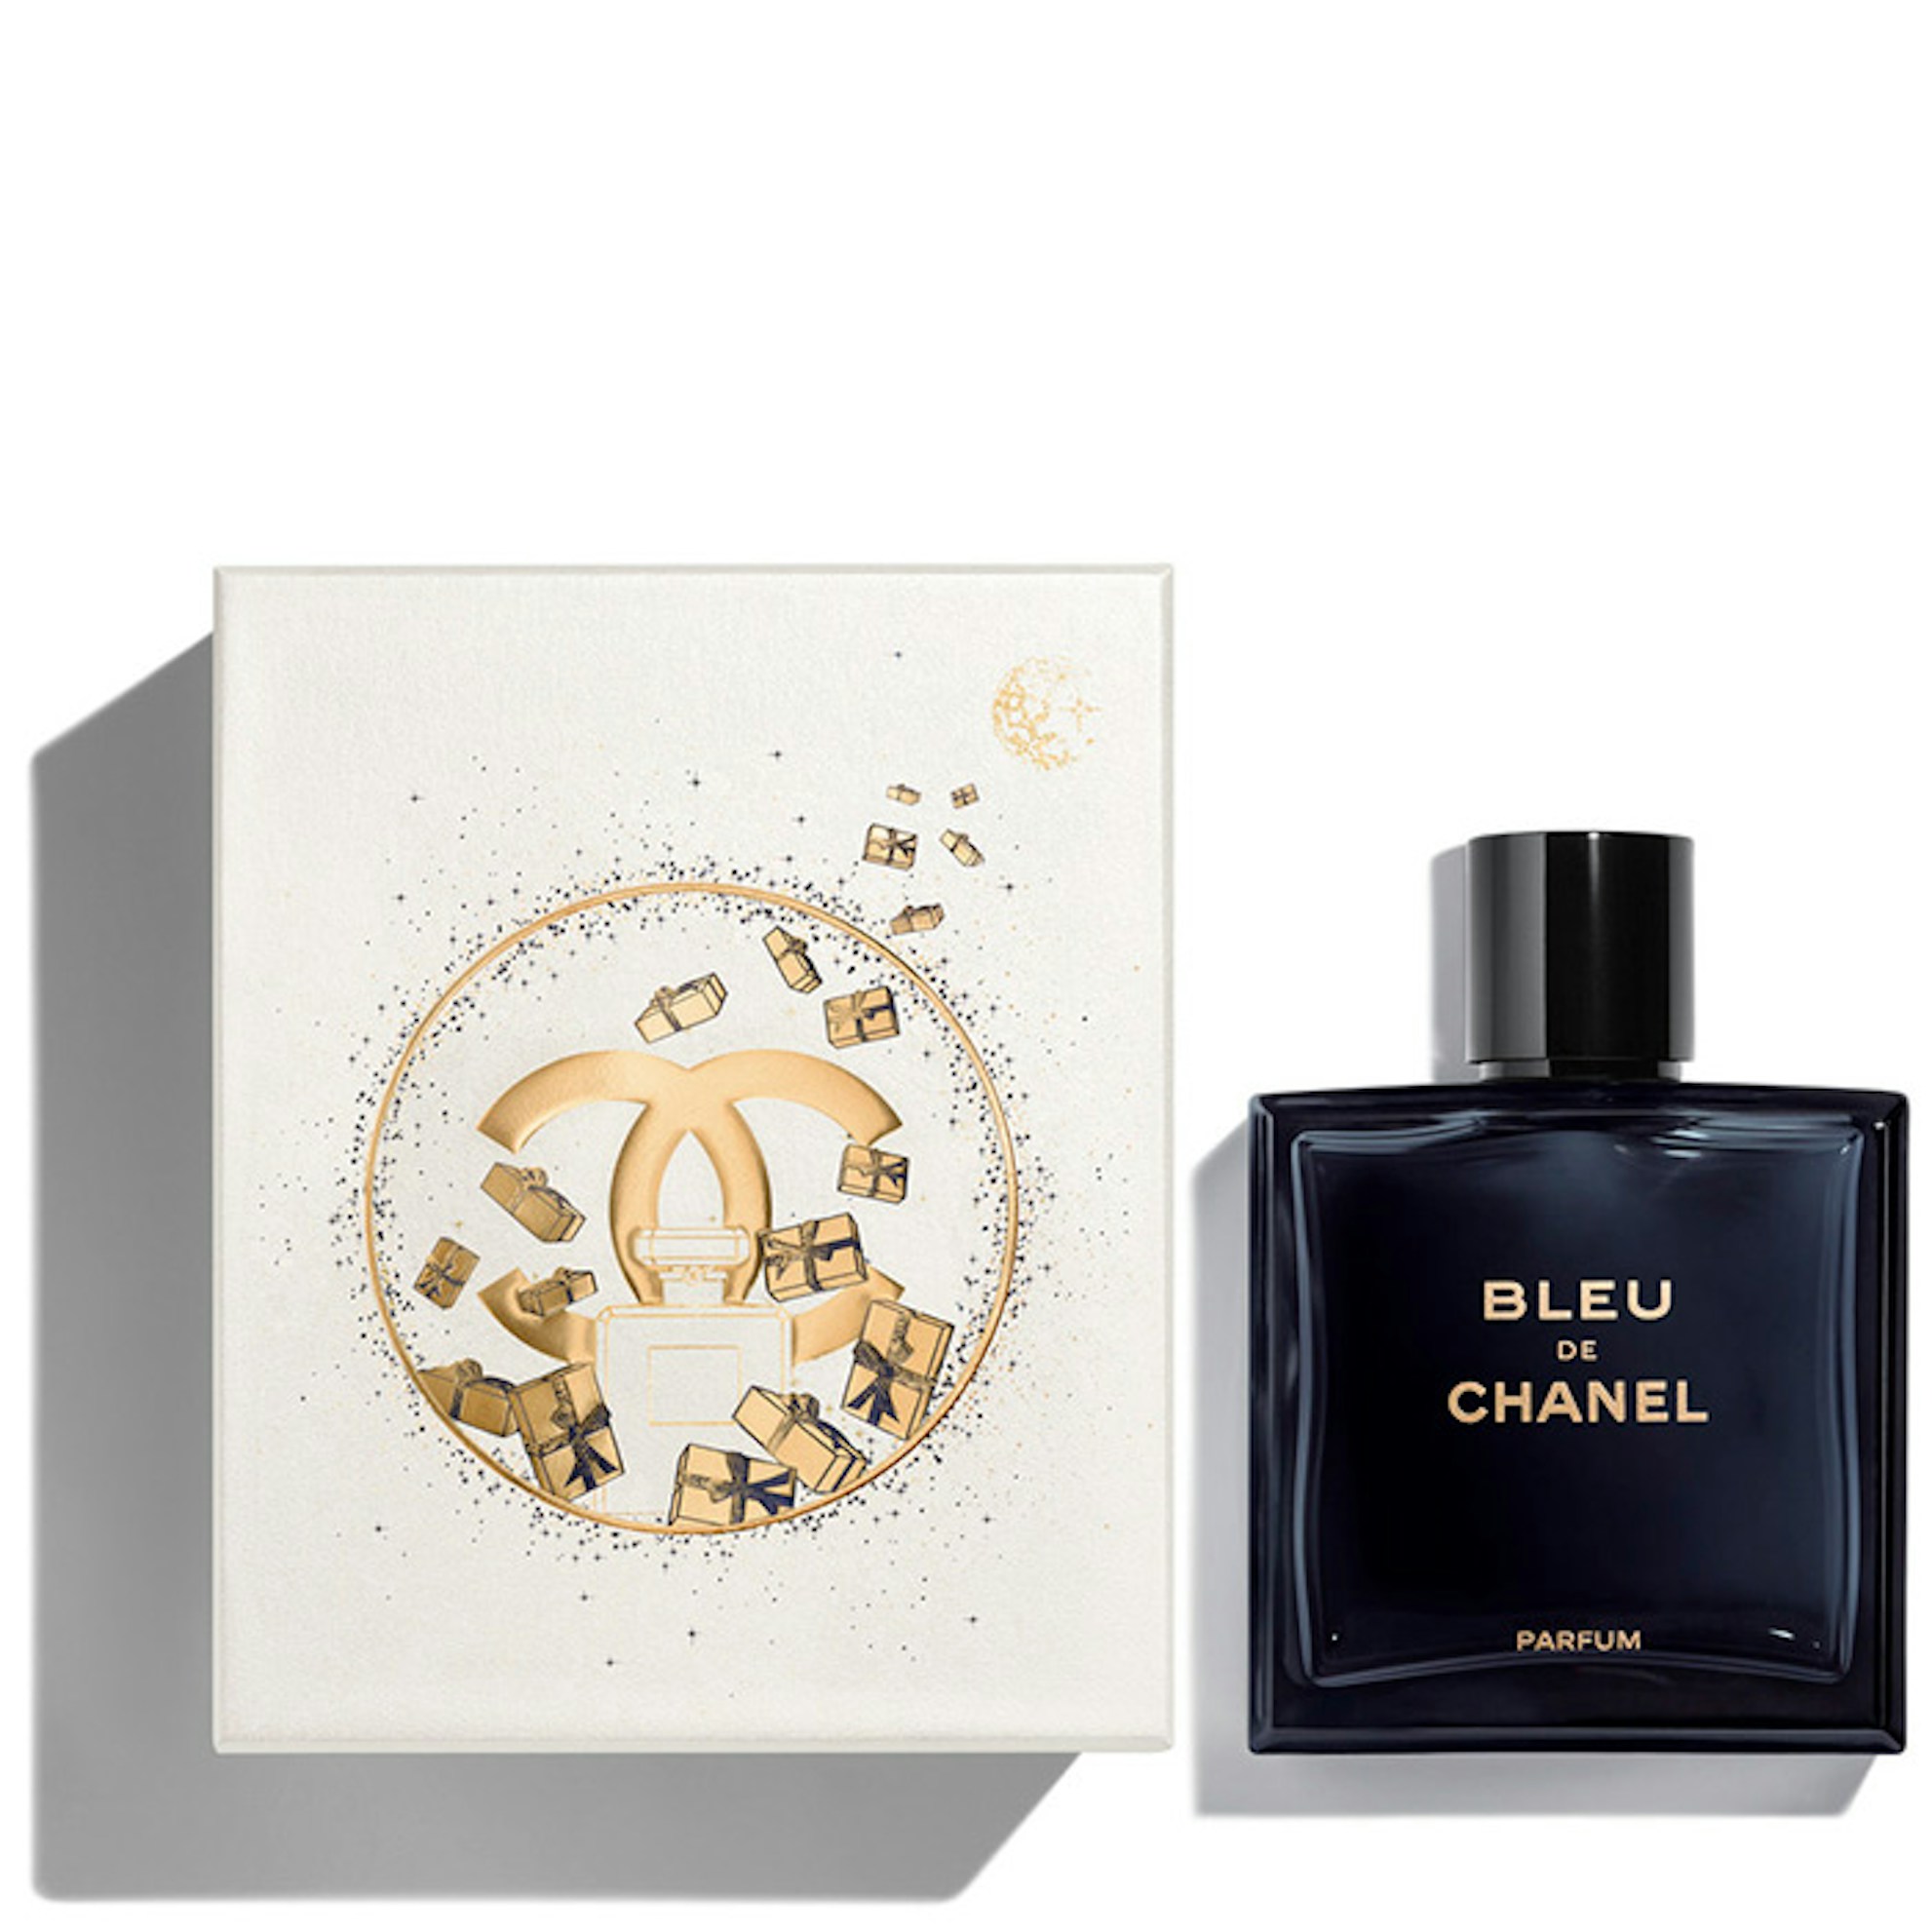 Bleu De CHANEL Parfum 100ml + Gift Box